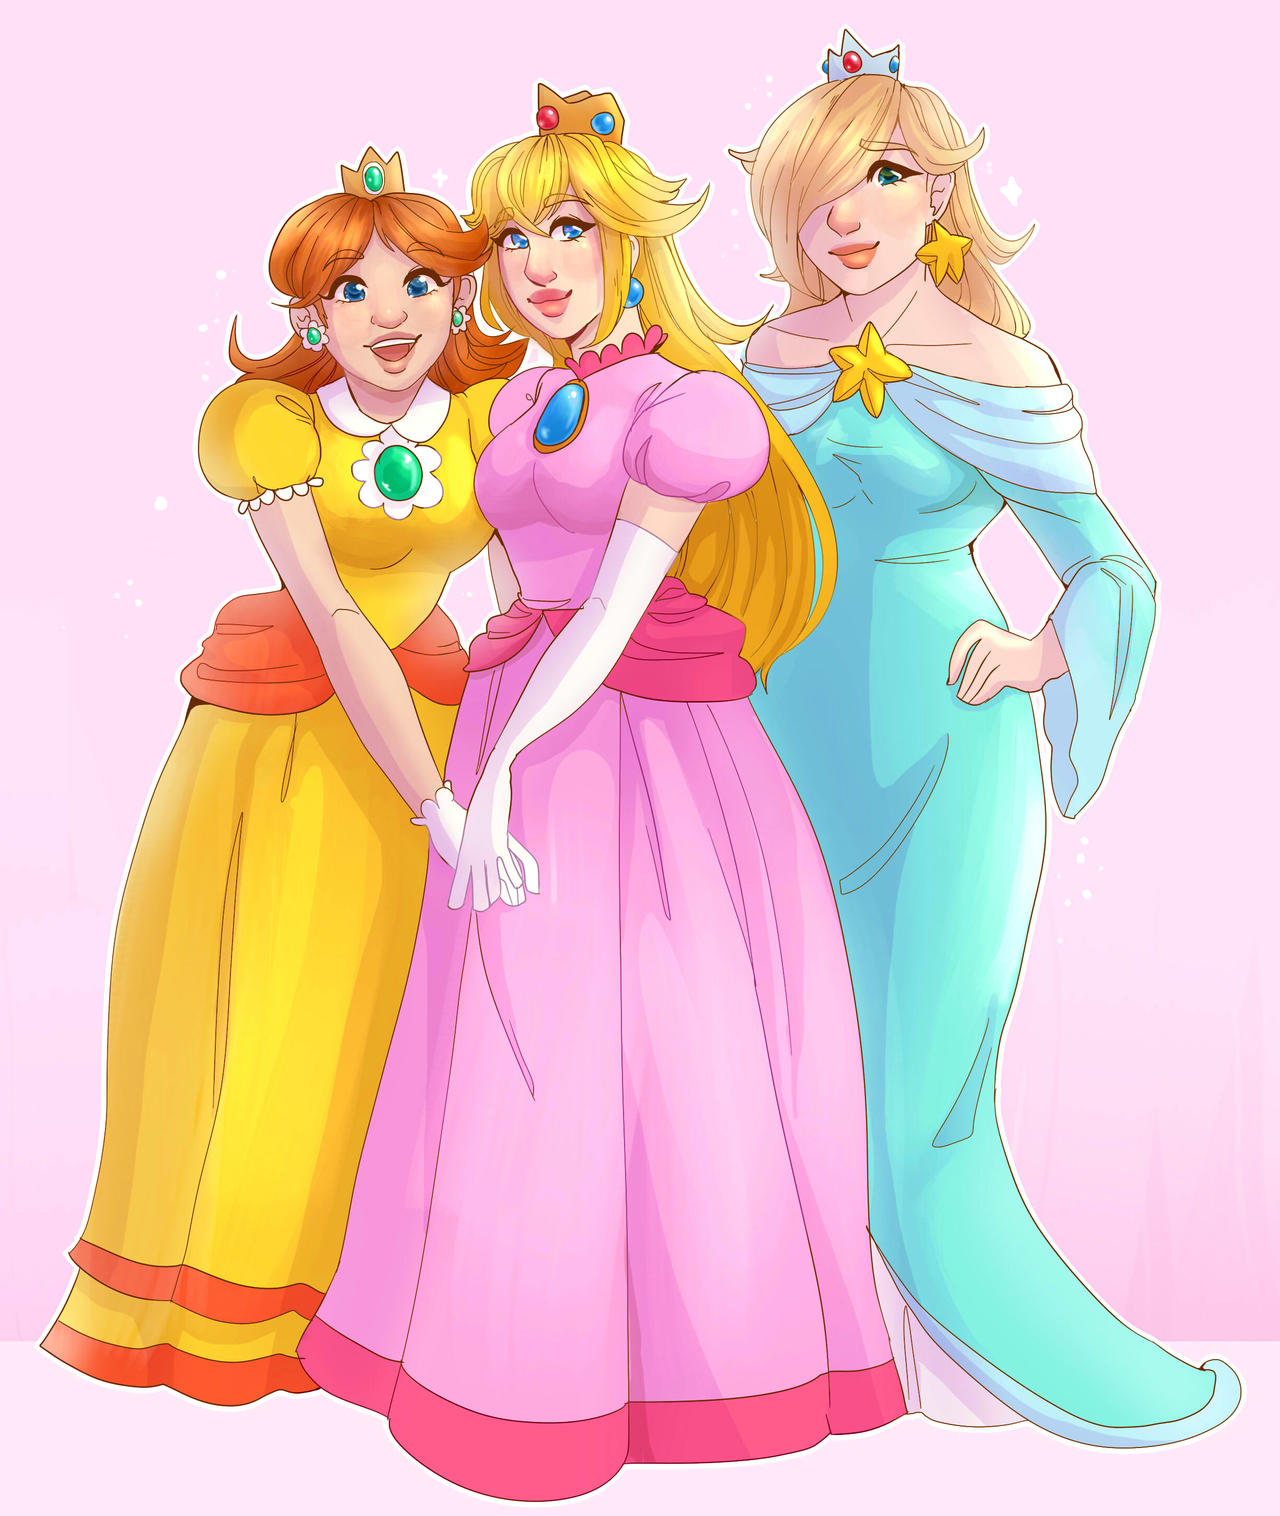 Peach, Rosalina, and Daisy by starricutie on DeviantArt